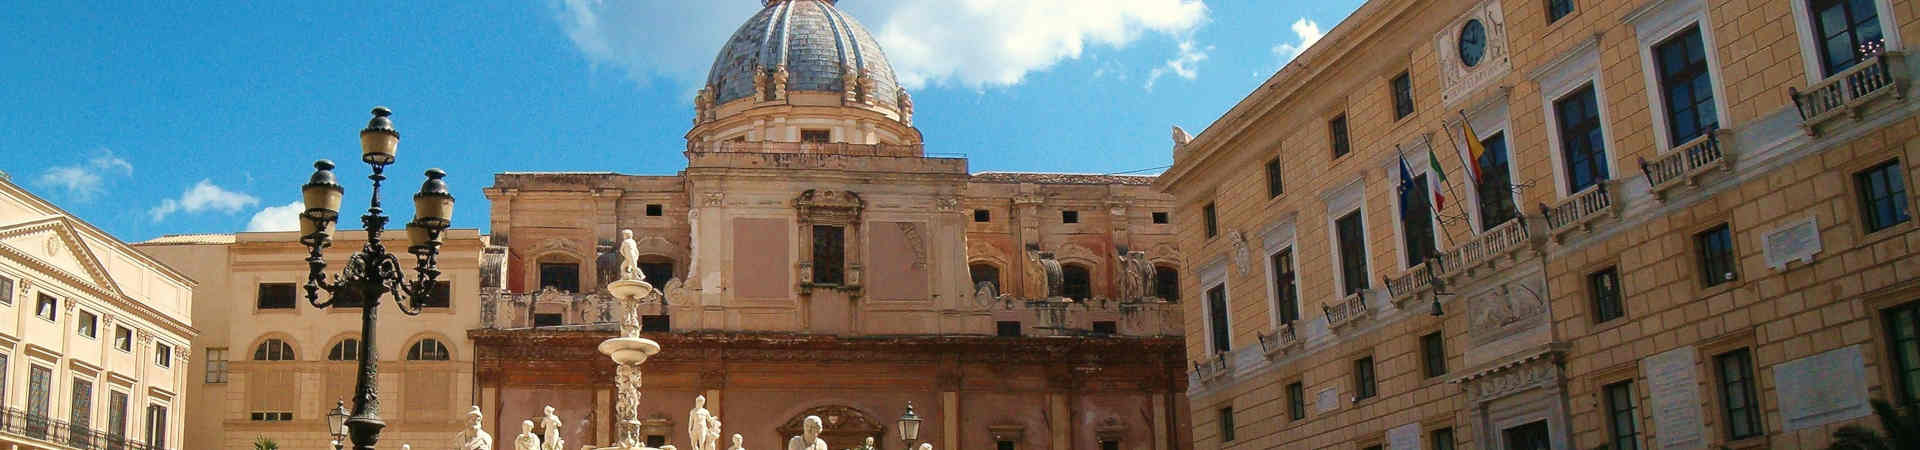 Imagen recurso del puerto de destino Palermo para la ruta en ferry Cagliari - Palermo